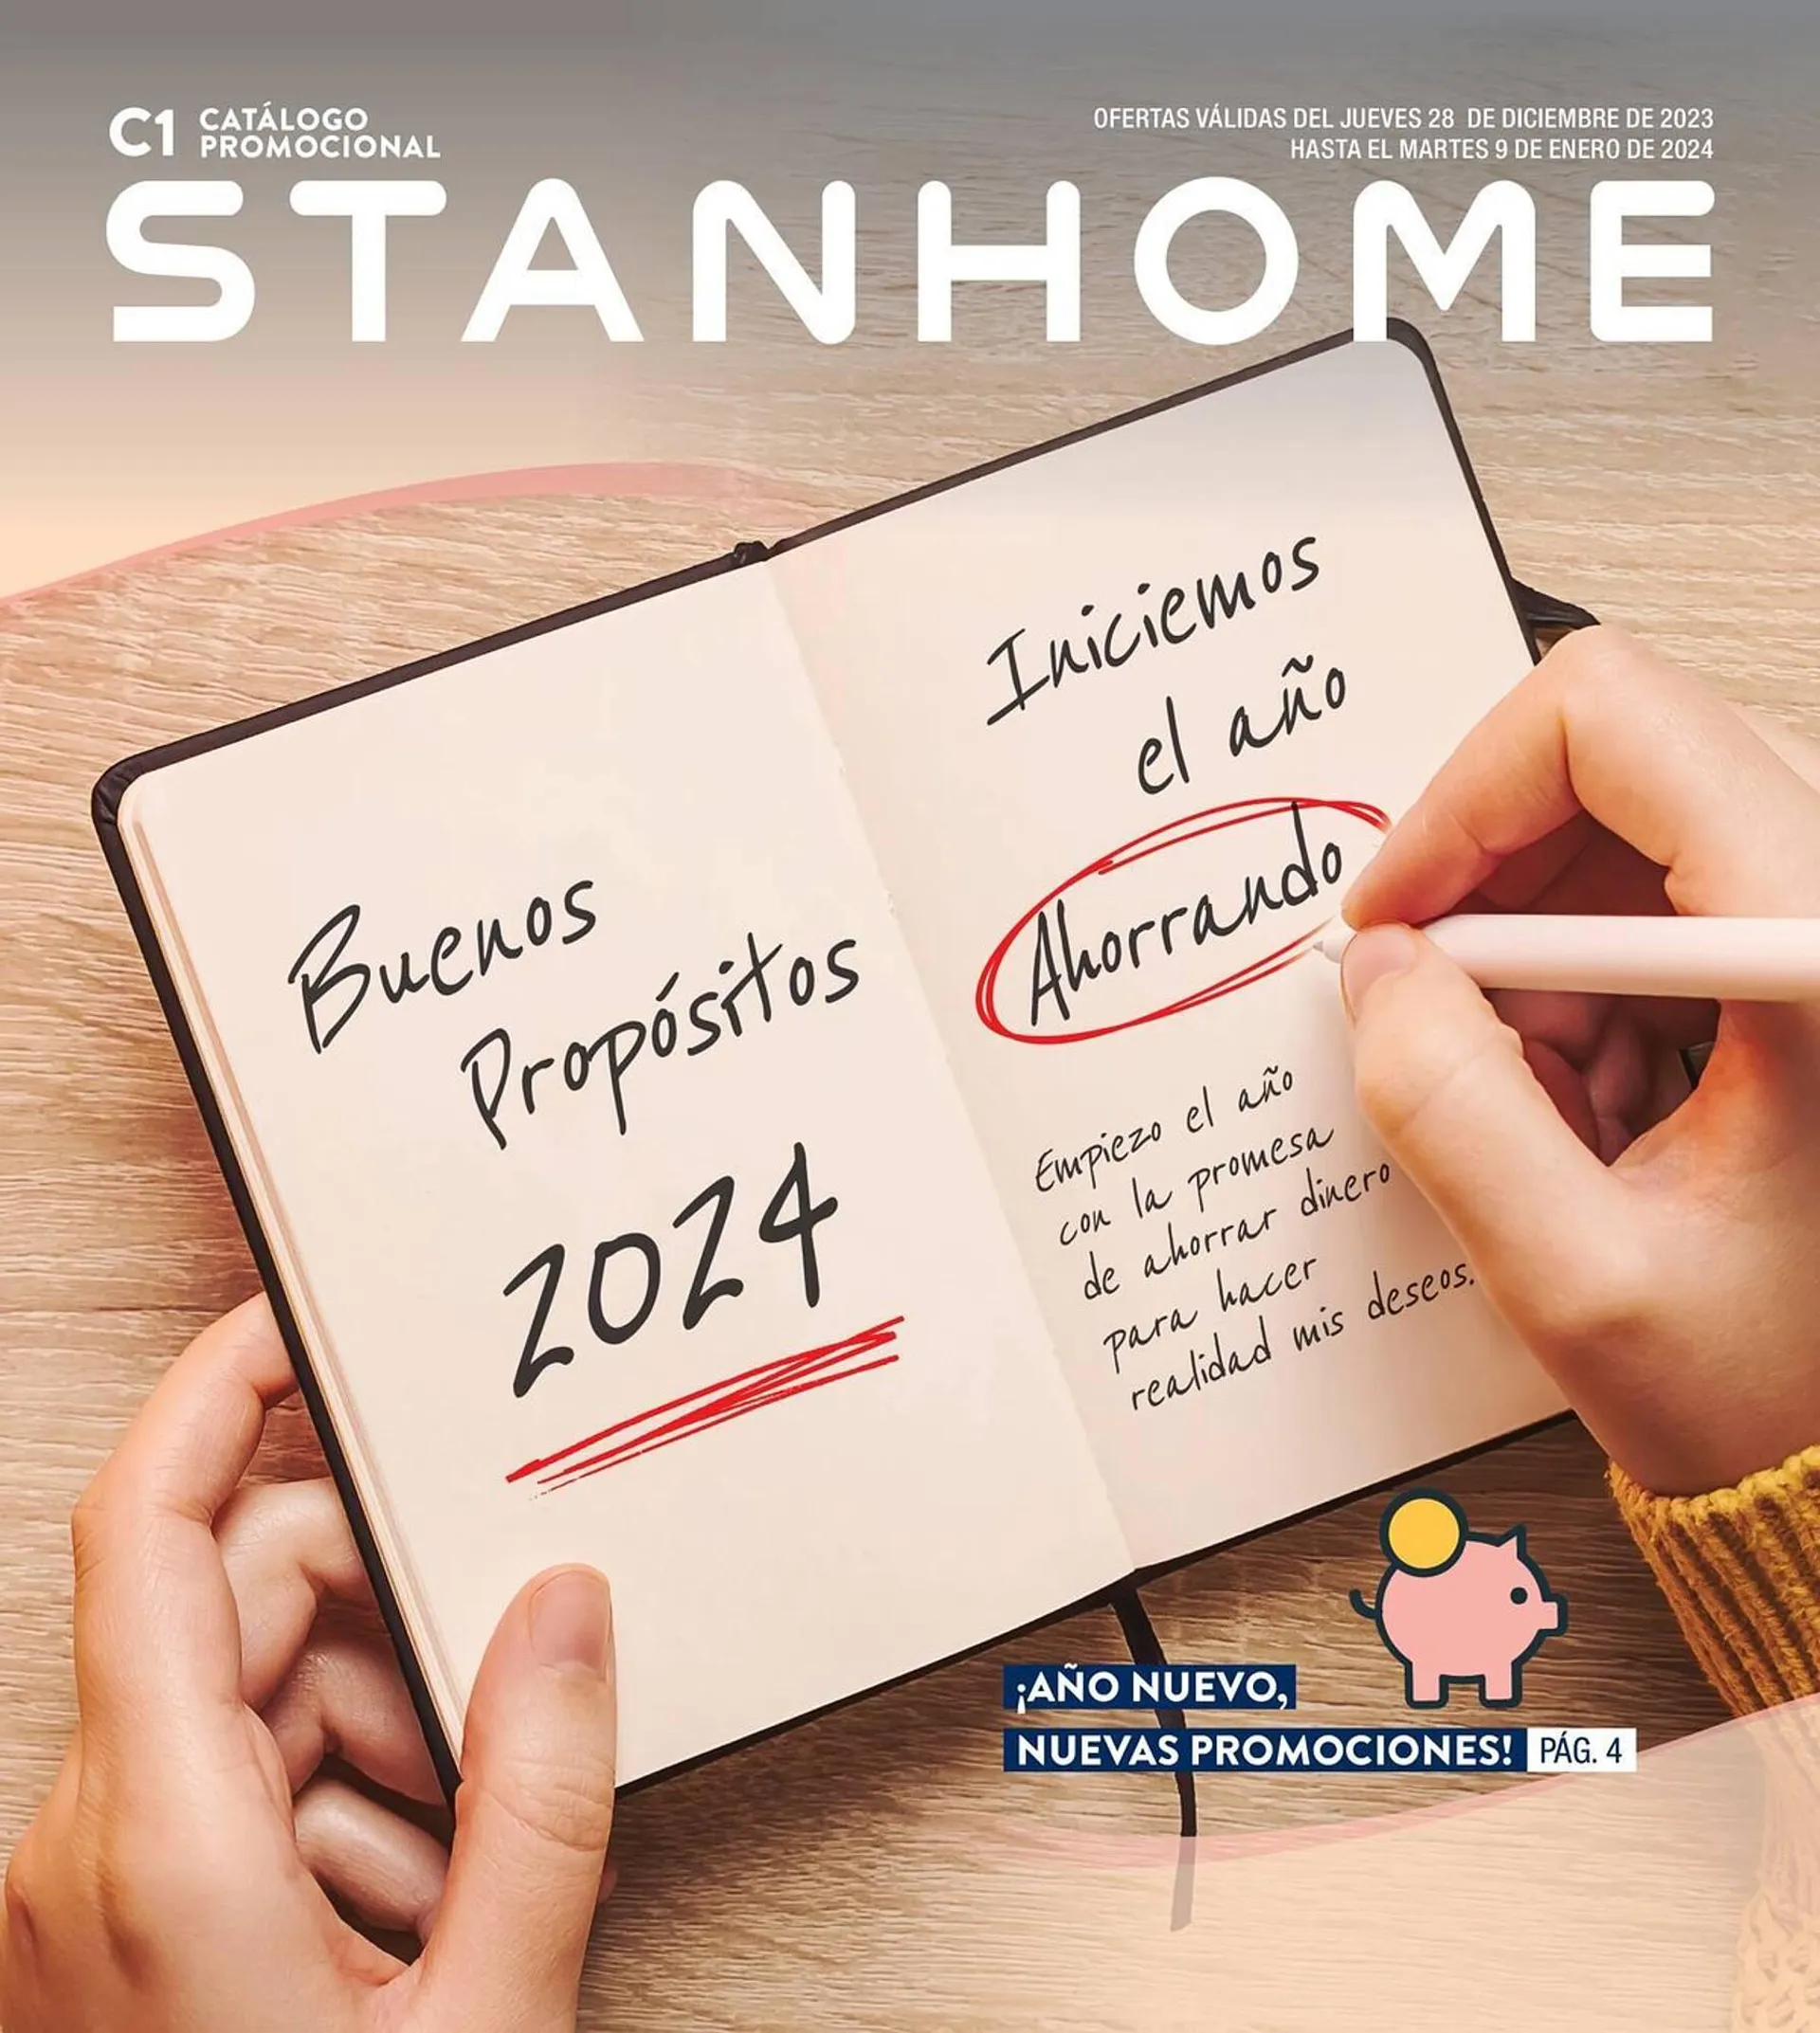 Catálogo de Folleto Stanhome 29 de diciembre al 9 de enero 2024 - Página 